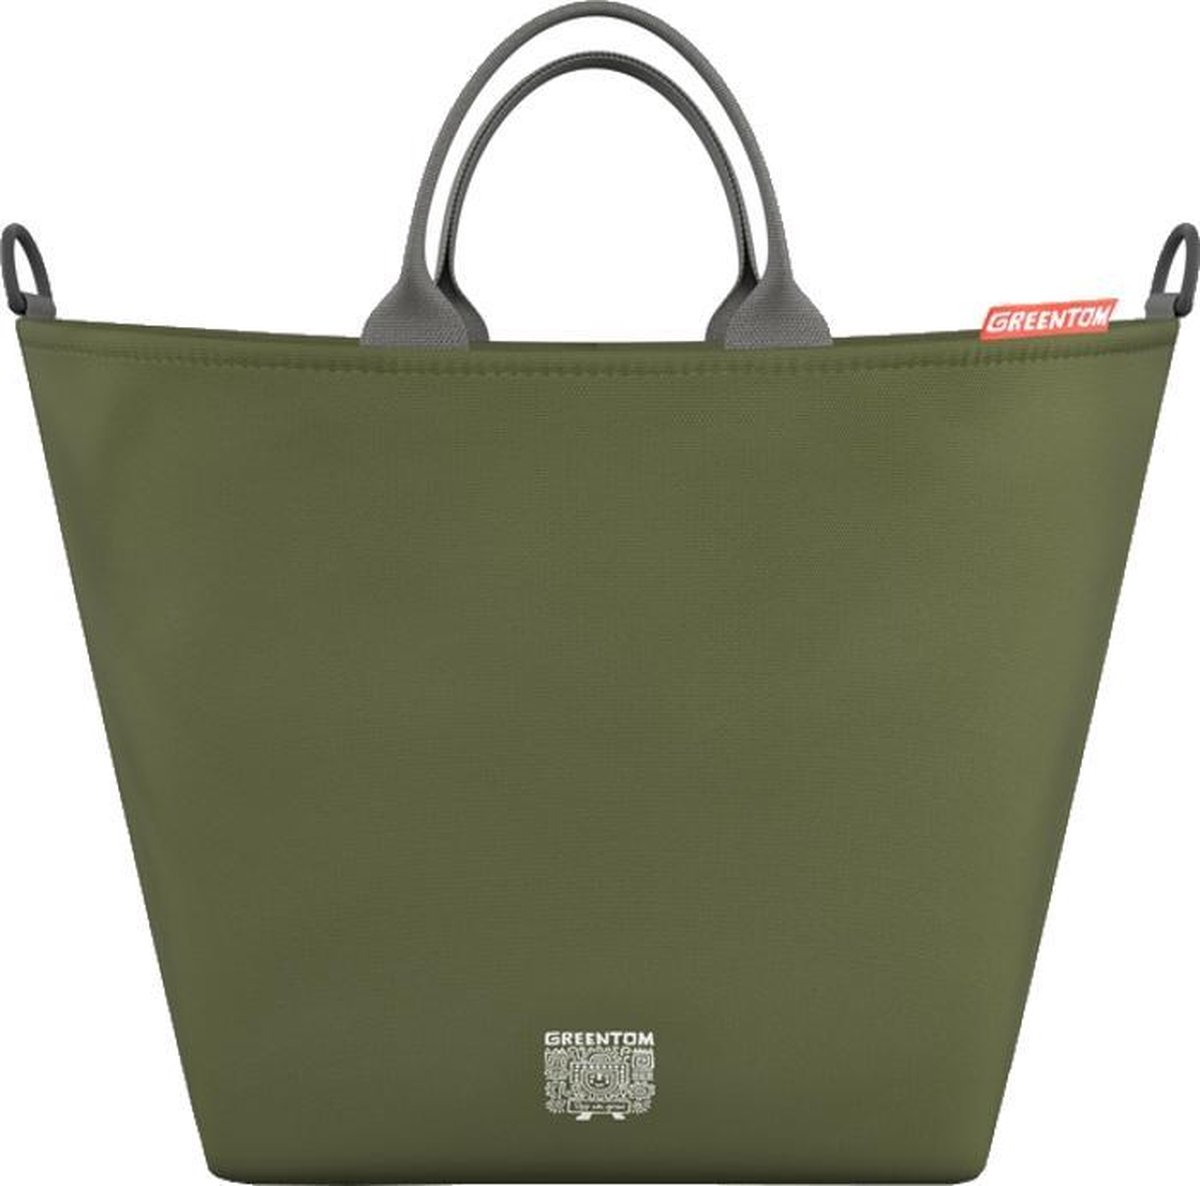 Greentom Shopping bag